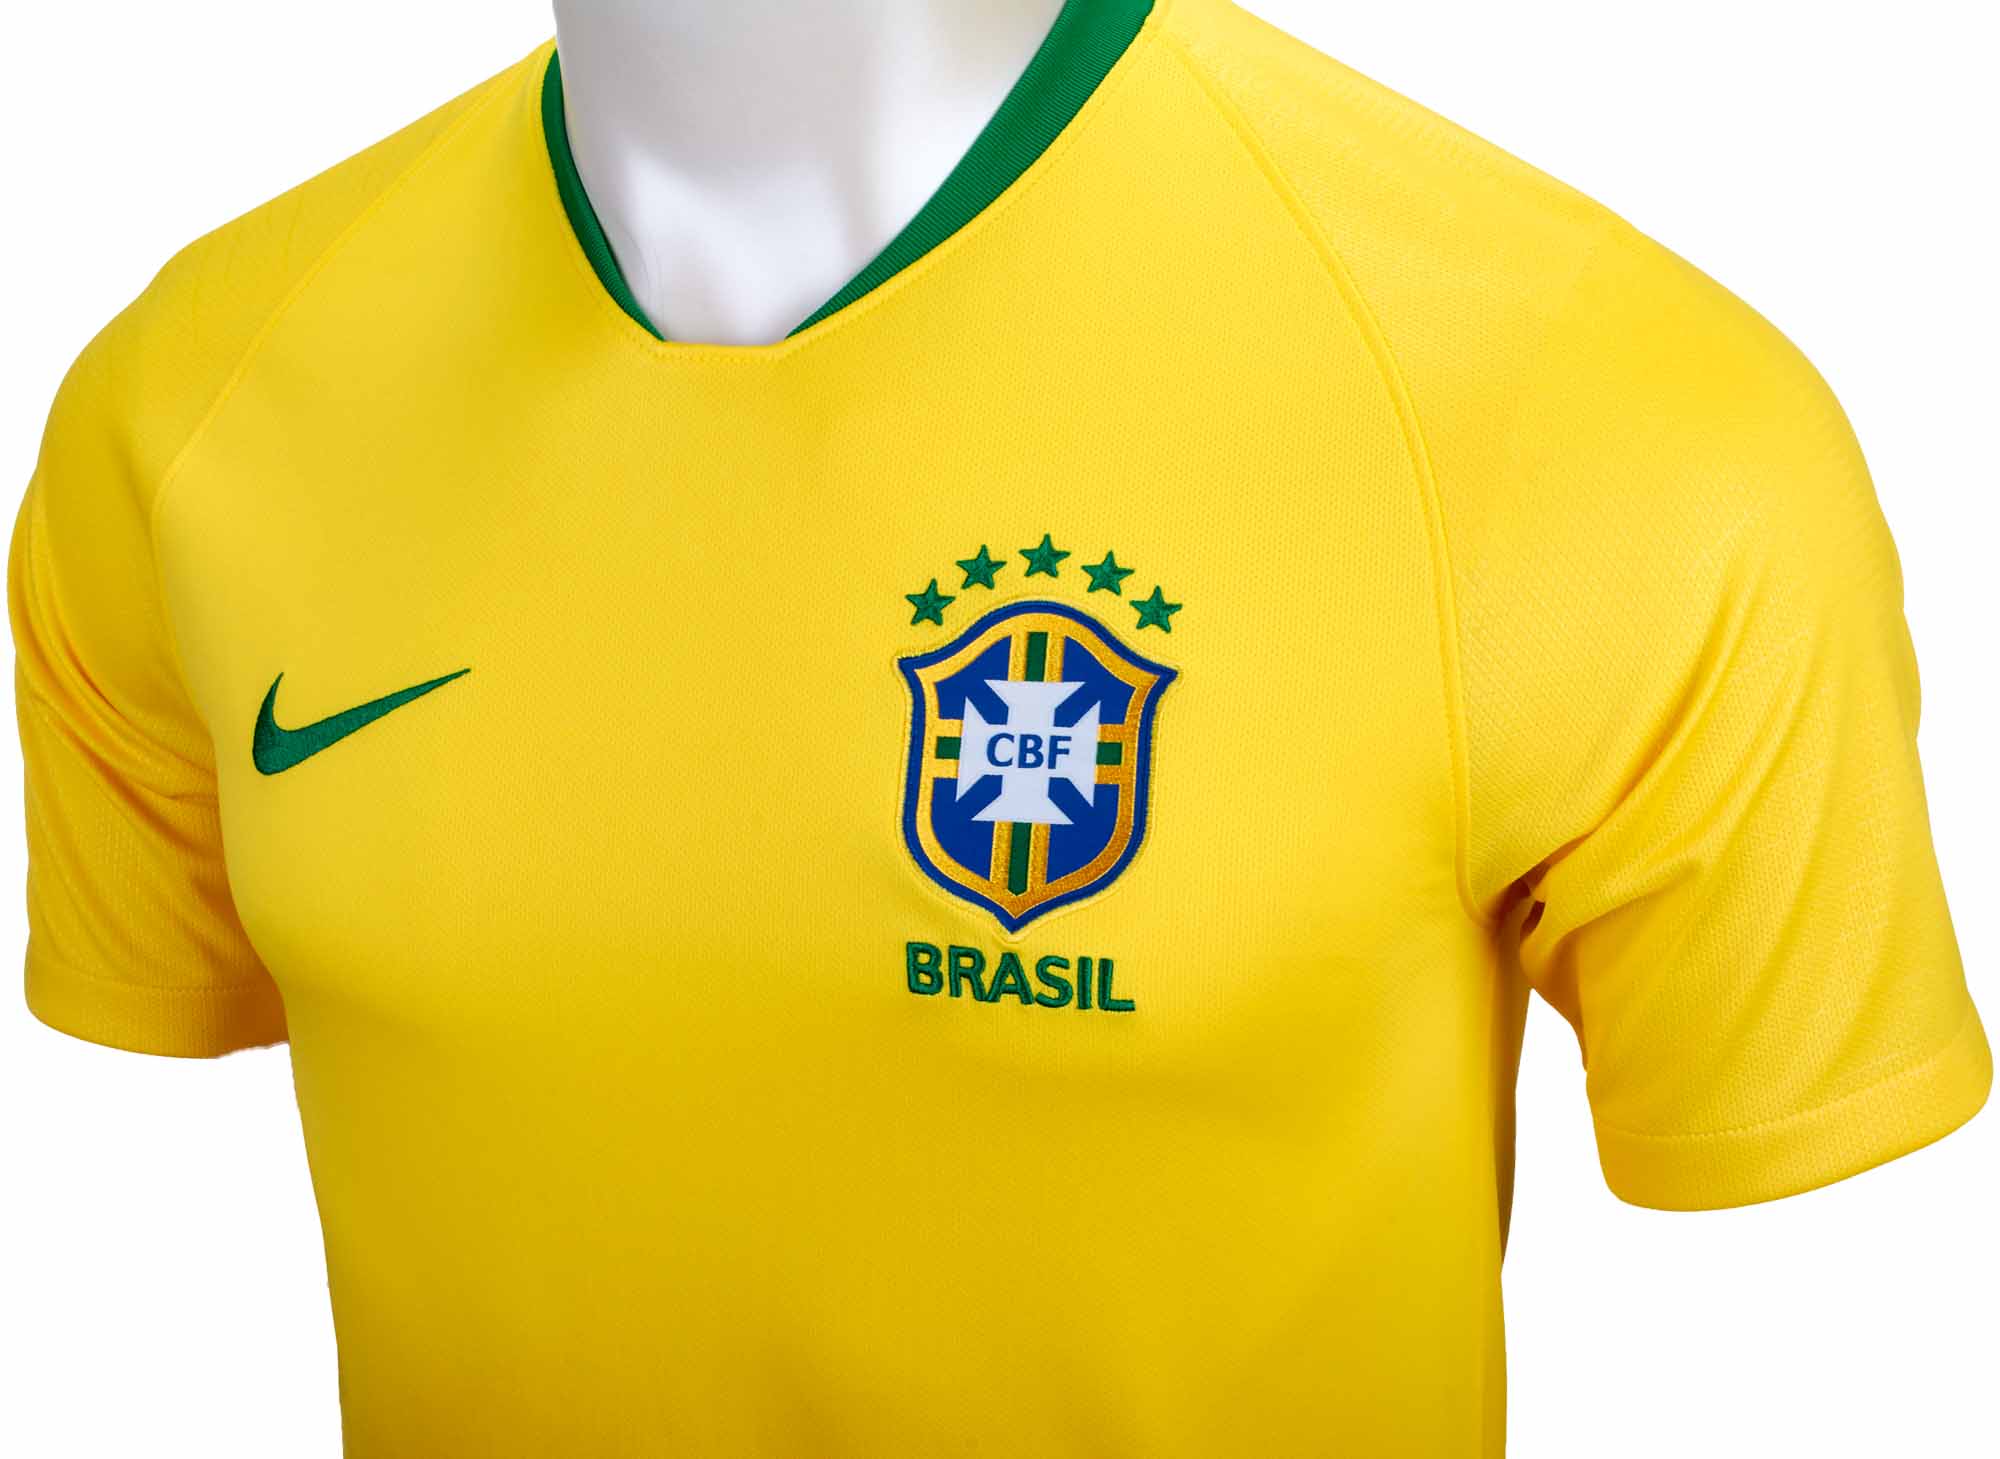 Brazil Merchandise, Brazil Apparel, Jerseys & Gear